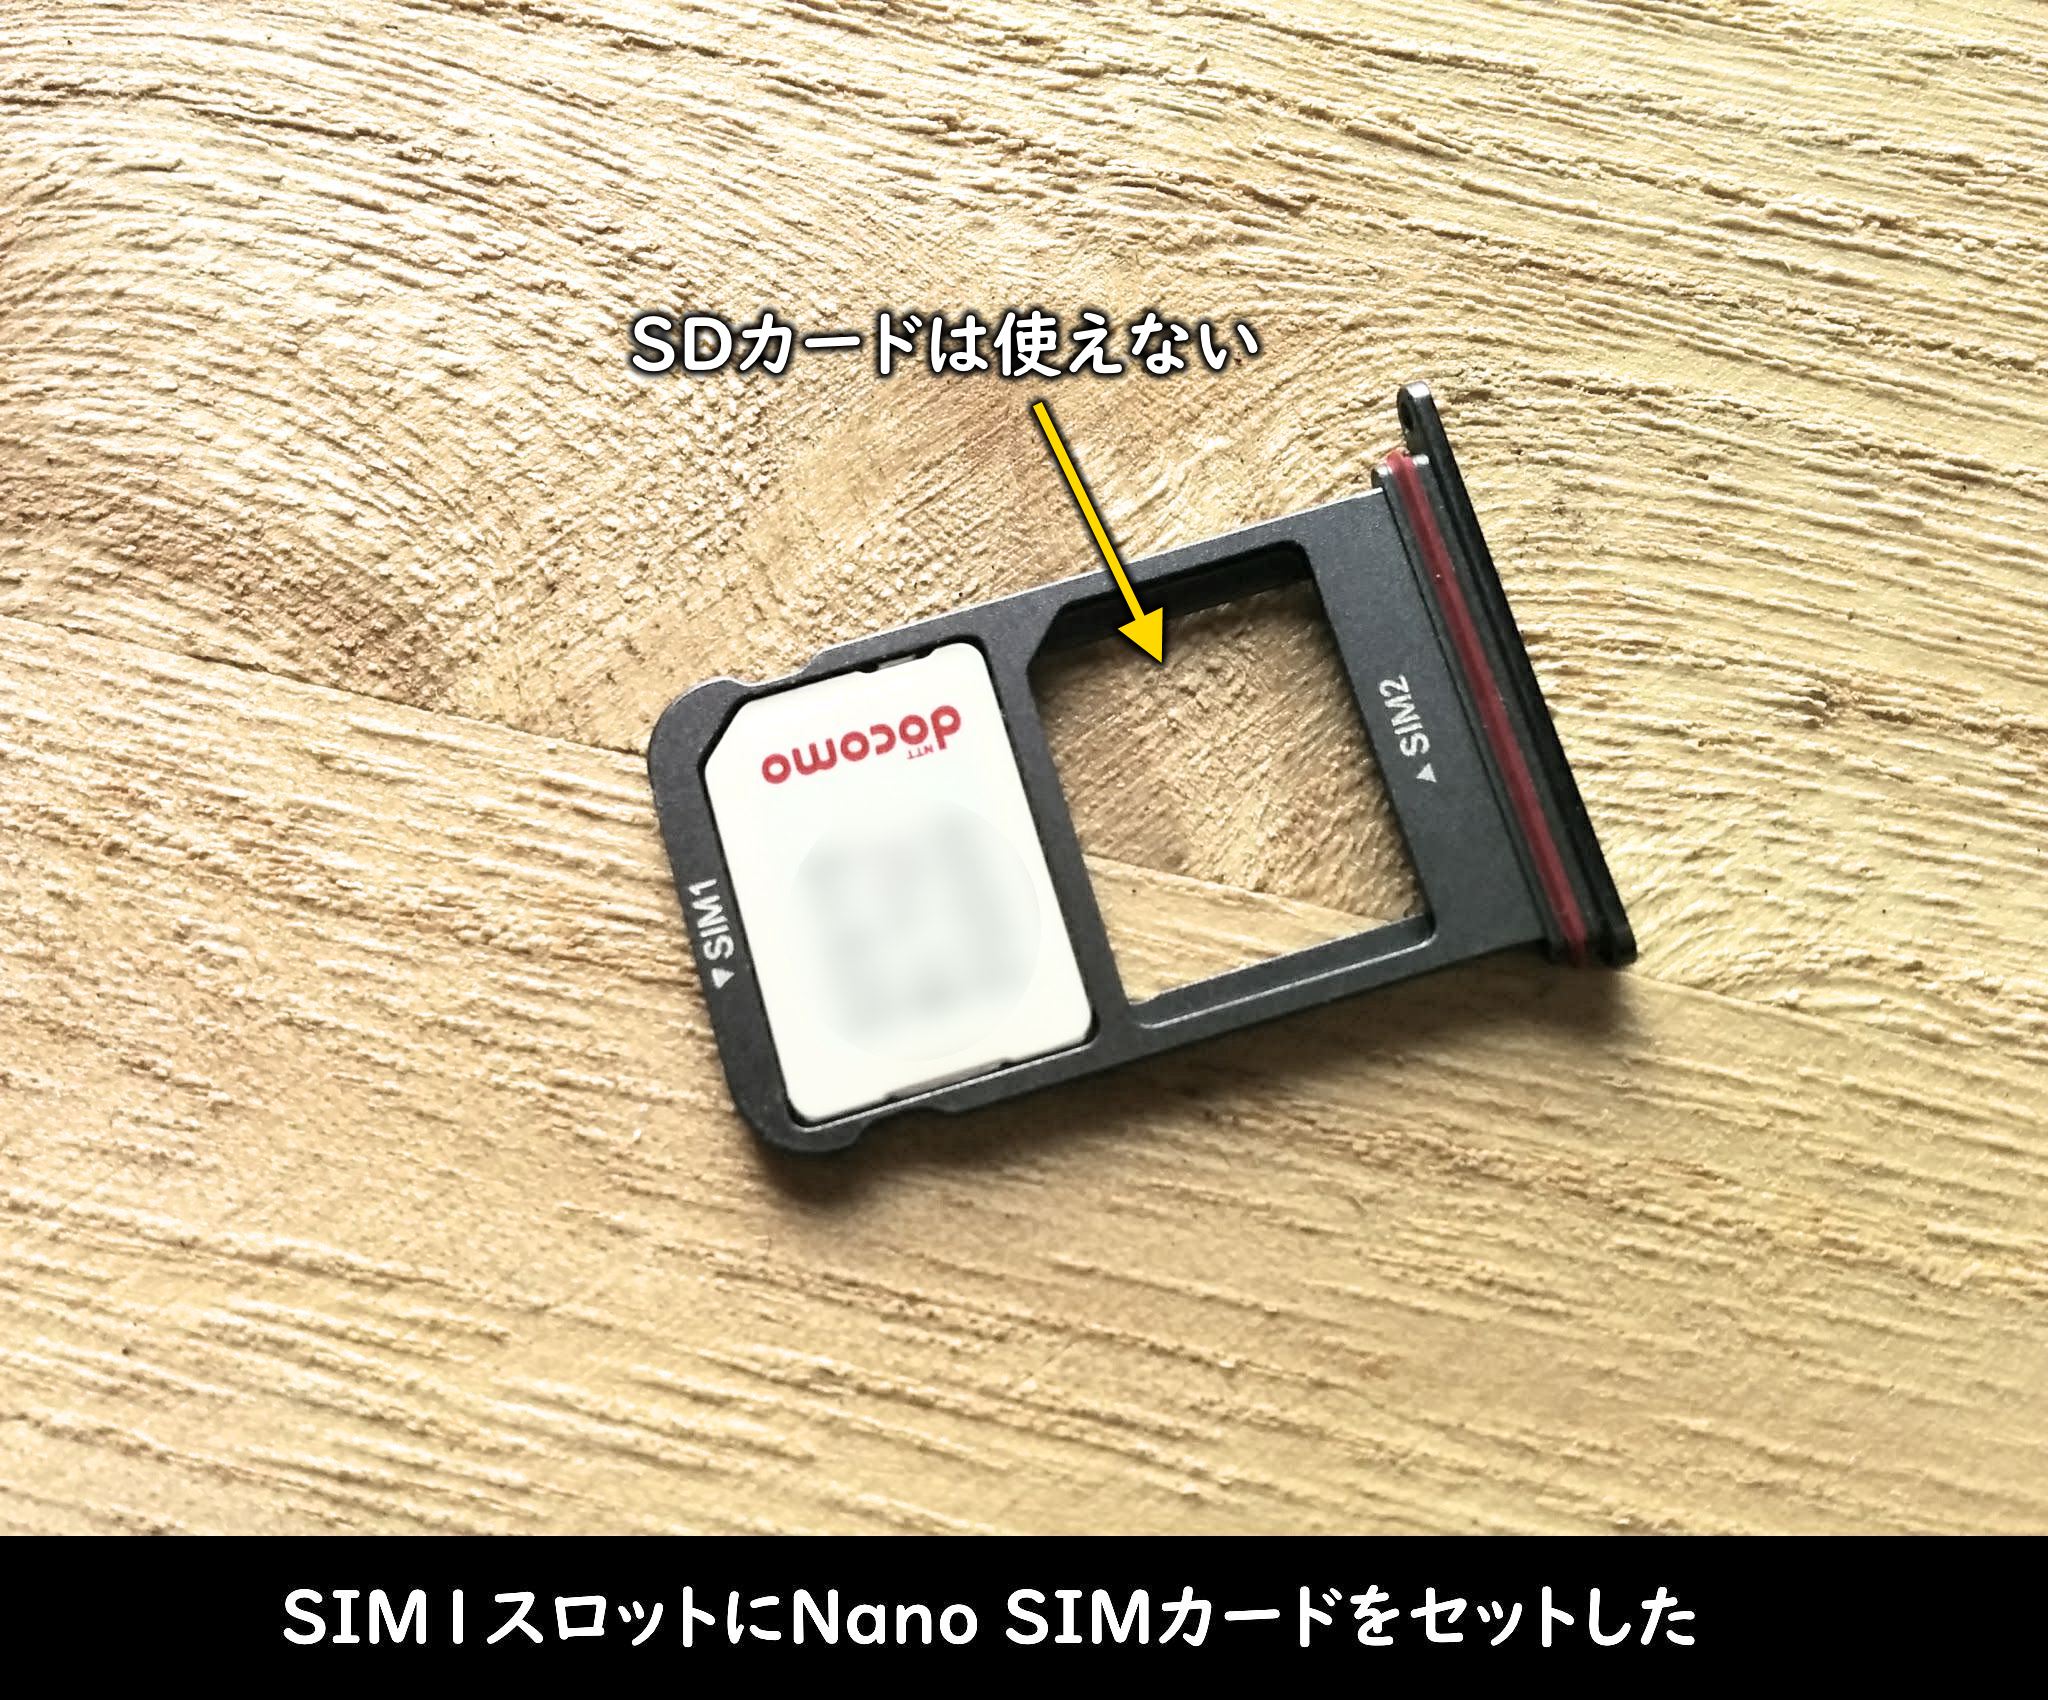 SIM1スロットにNano SIMカードをセットした